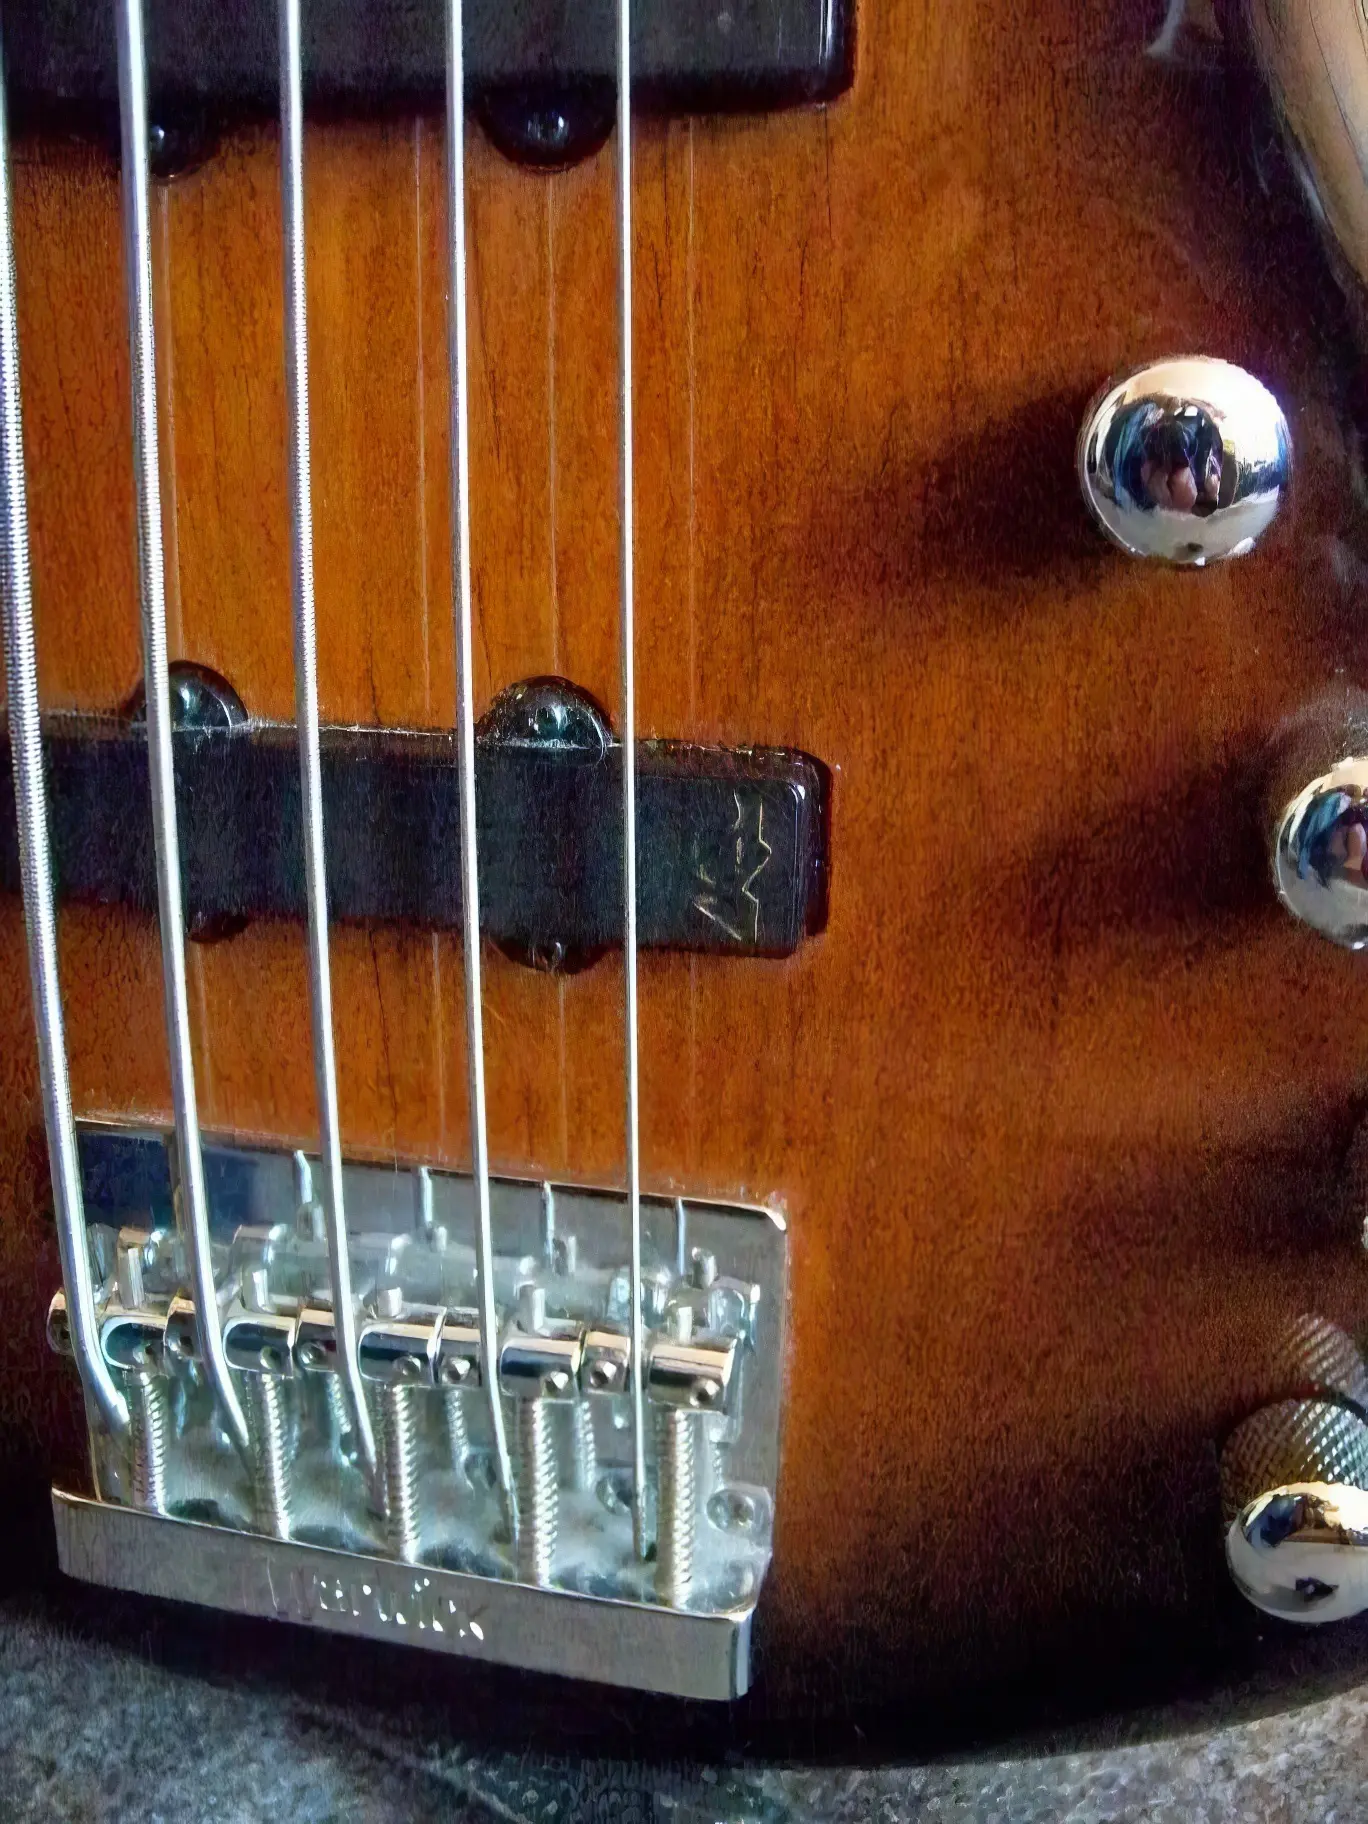 Brzydkie przystawki gitara warwick rockbass  corvette